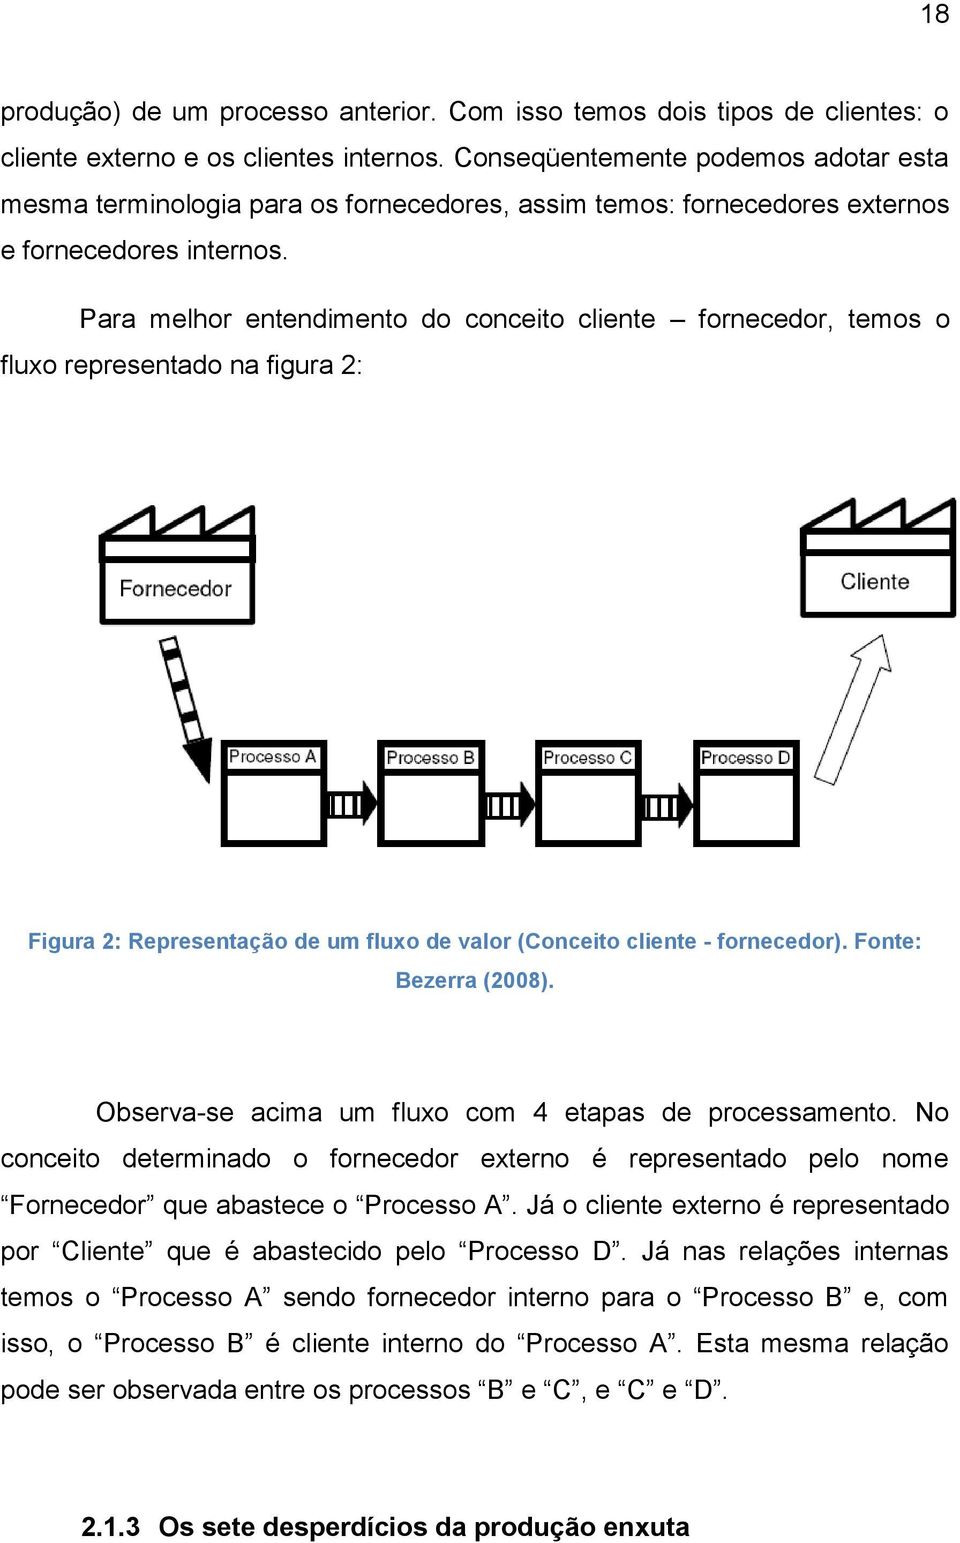 Para melhor entendimento do conceito cliente fornecedor, temos o fluxo representado na figura 2: Figura 2: Representação de um fluxo de valor (Conceito cliente - fornecedor). Fonte: Bezerra (2008).